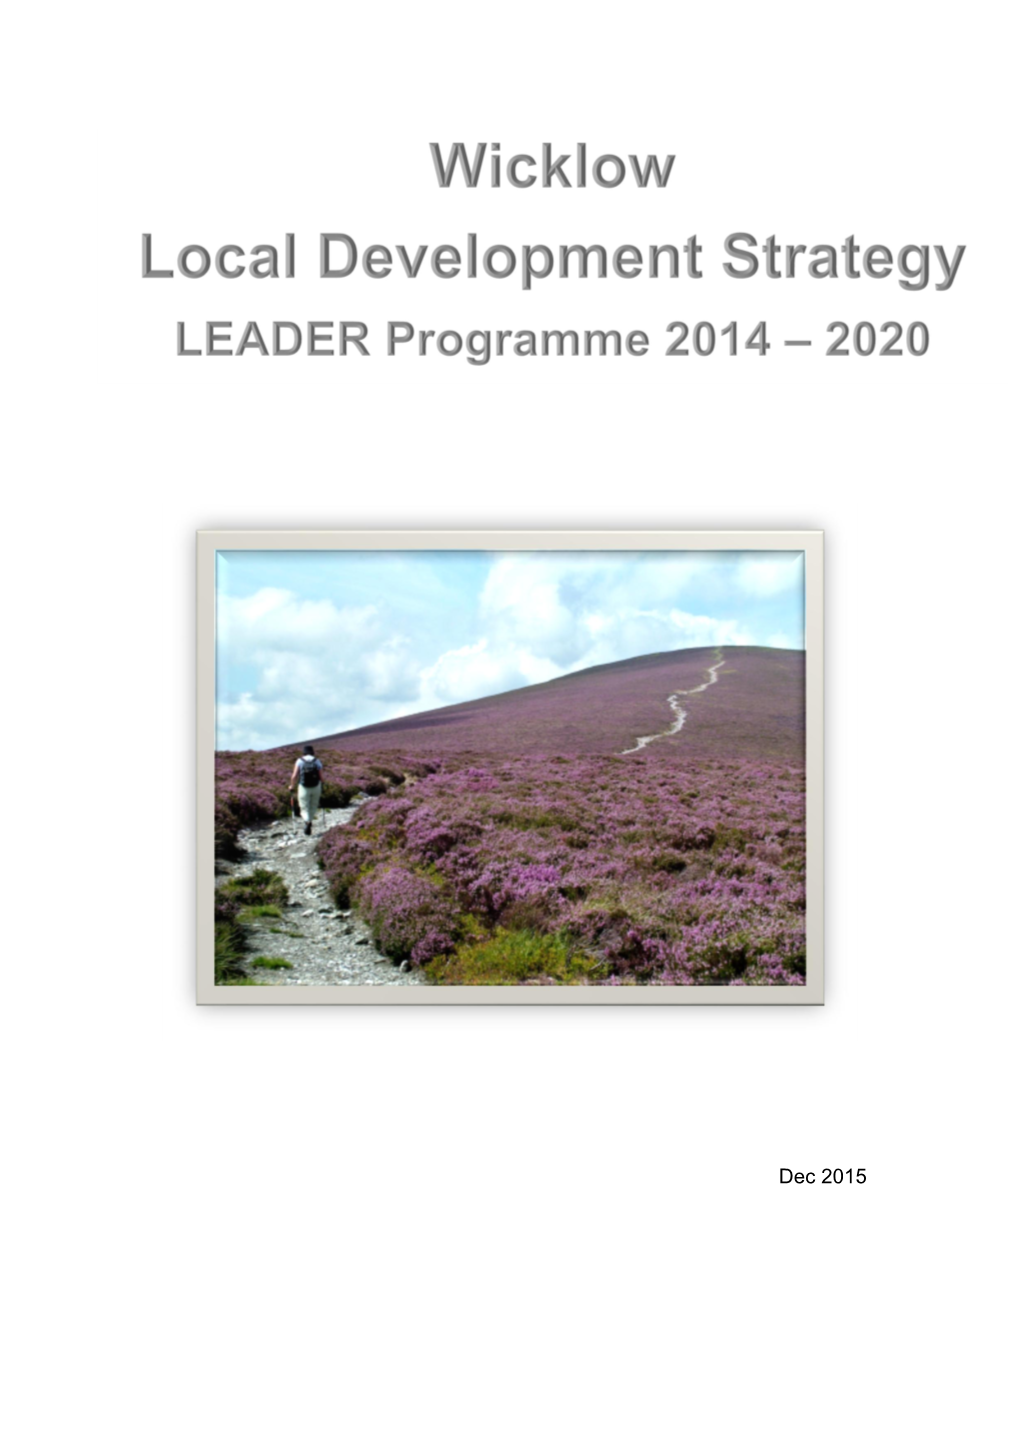 Wicklow Local Development Strategy